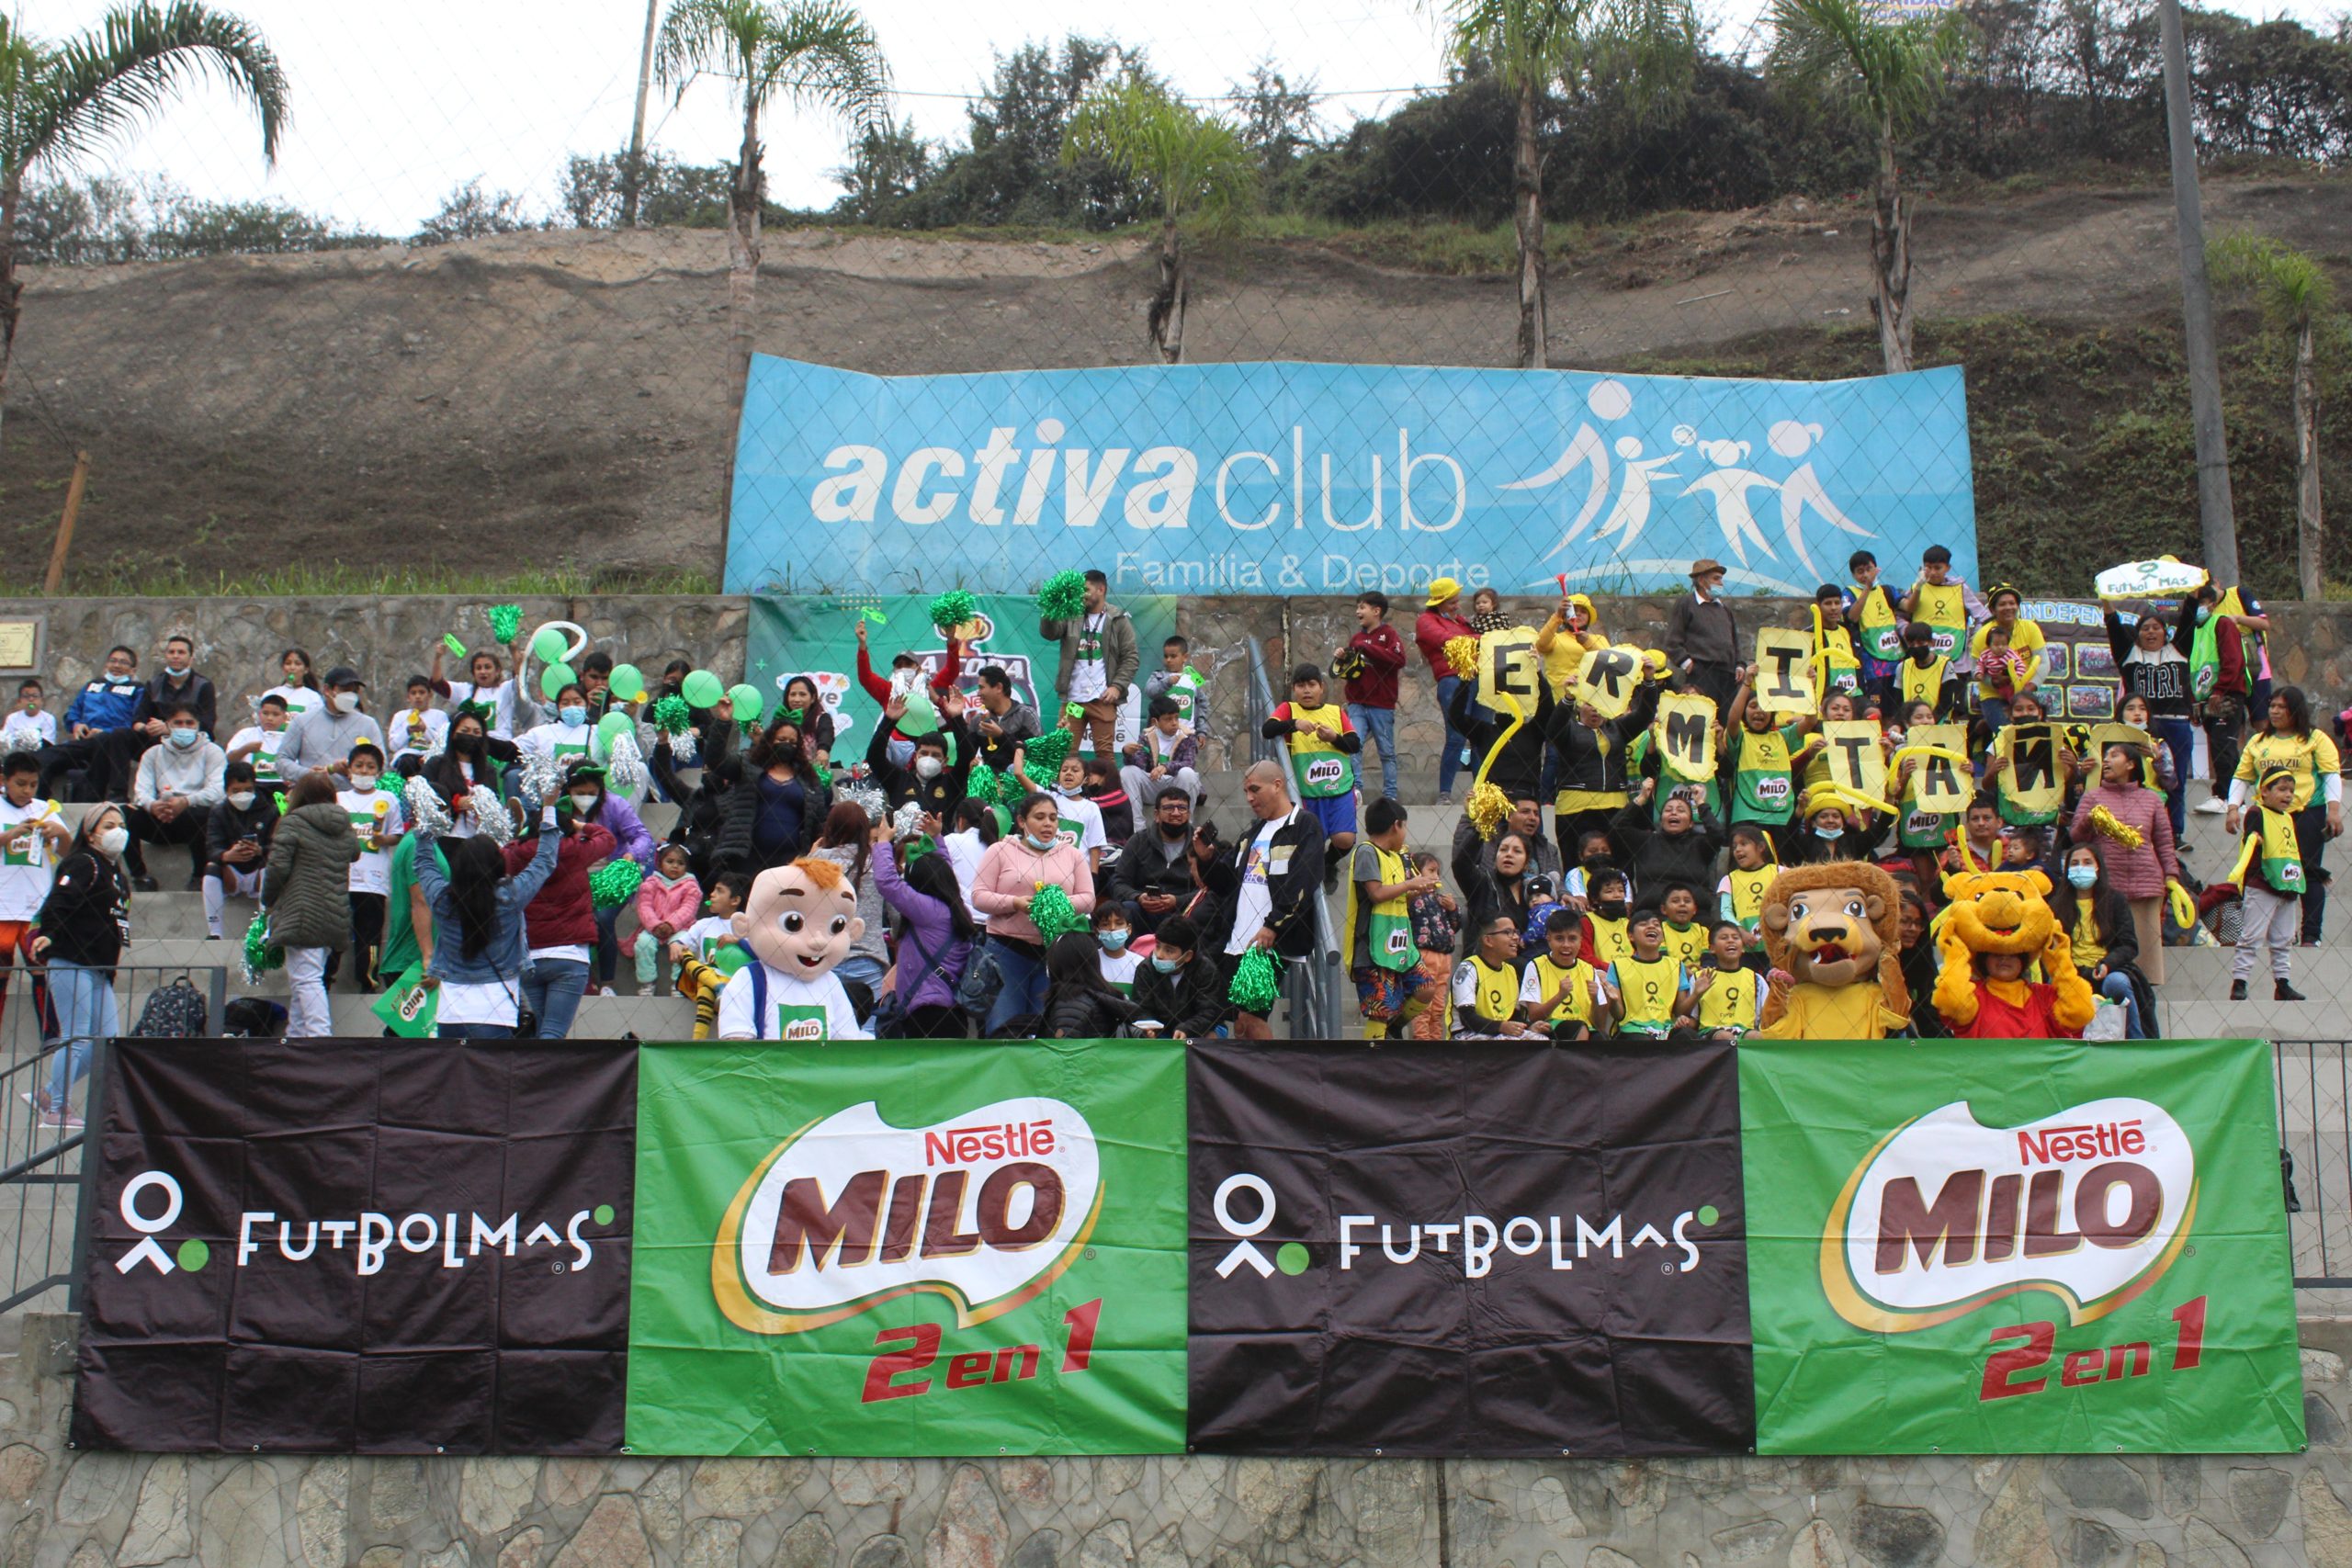 MILO organizó uno de los campeonatos de fútbol infantil y juvenil más grandes del Perú